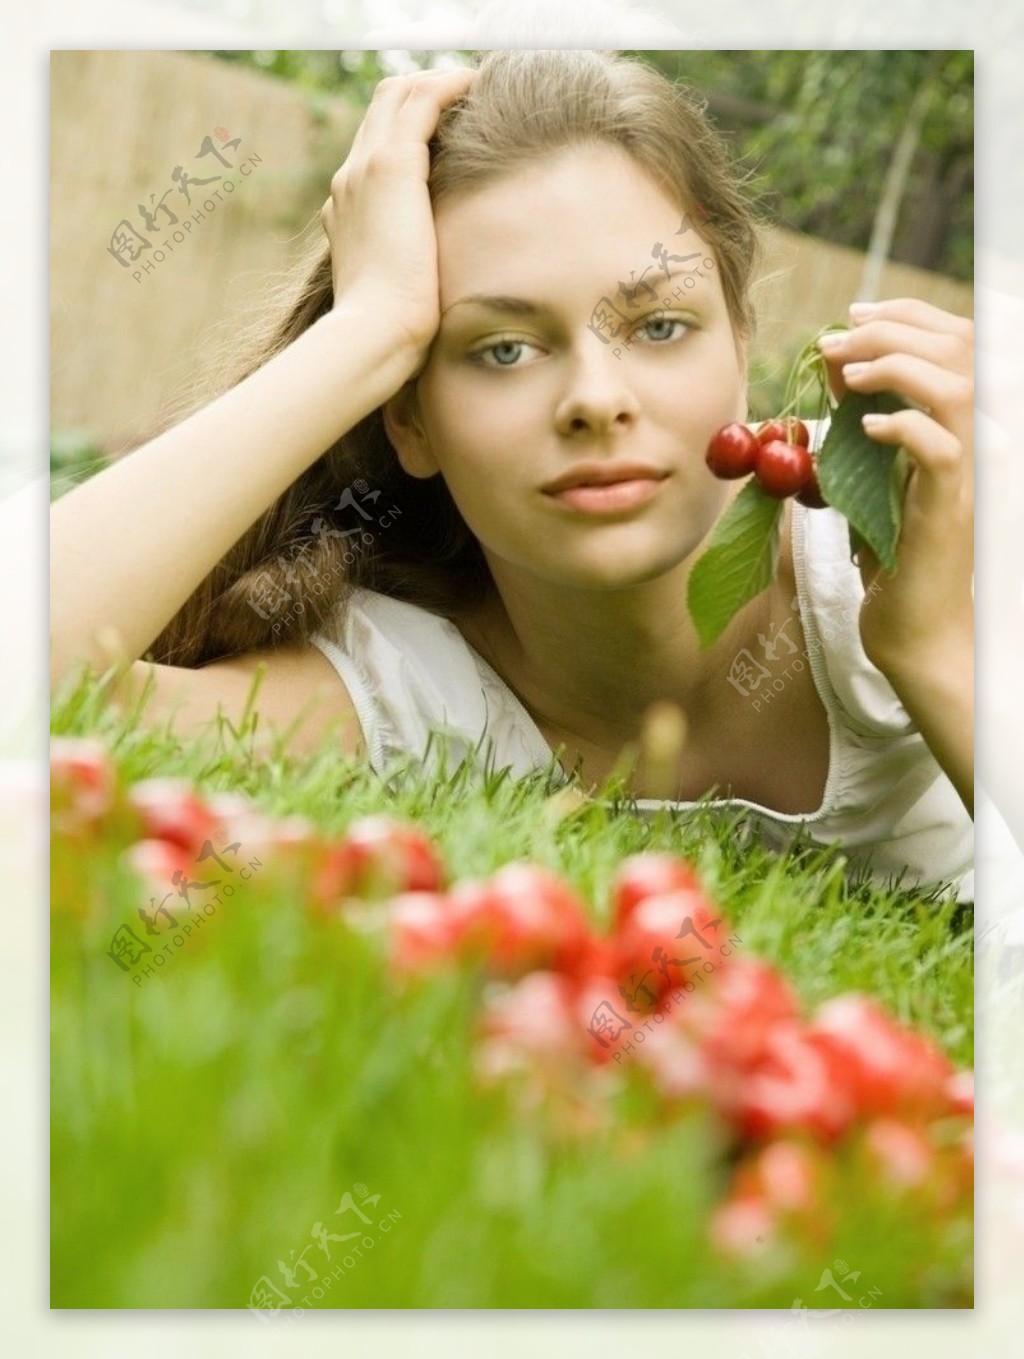 爬在草丛中手拿浆果的漂亮性感女孩图片